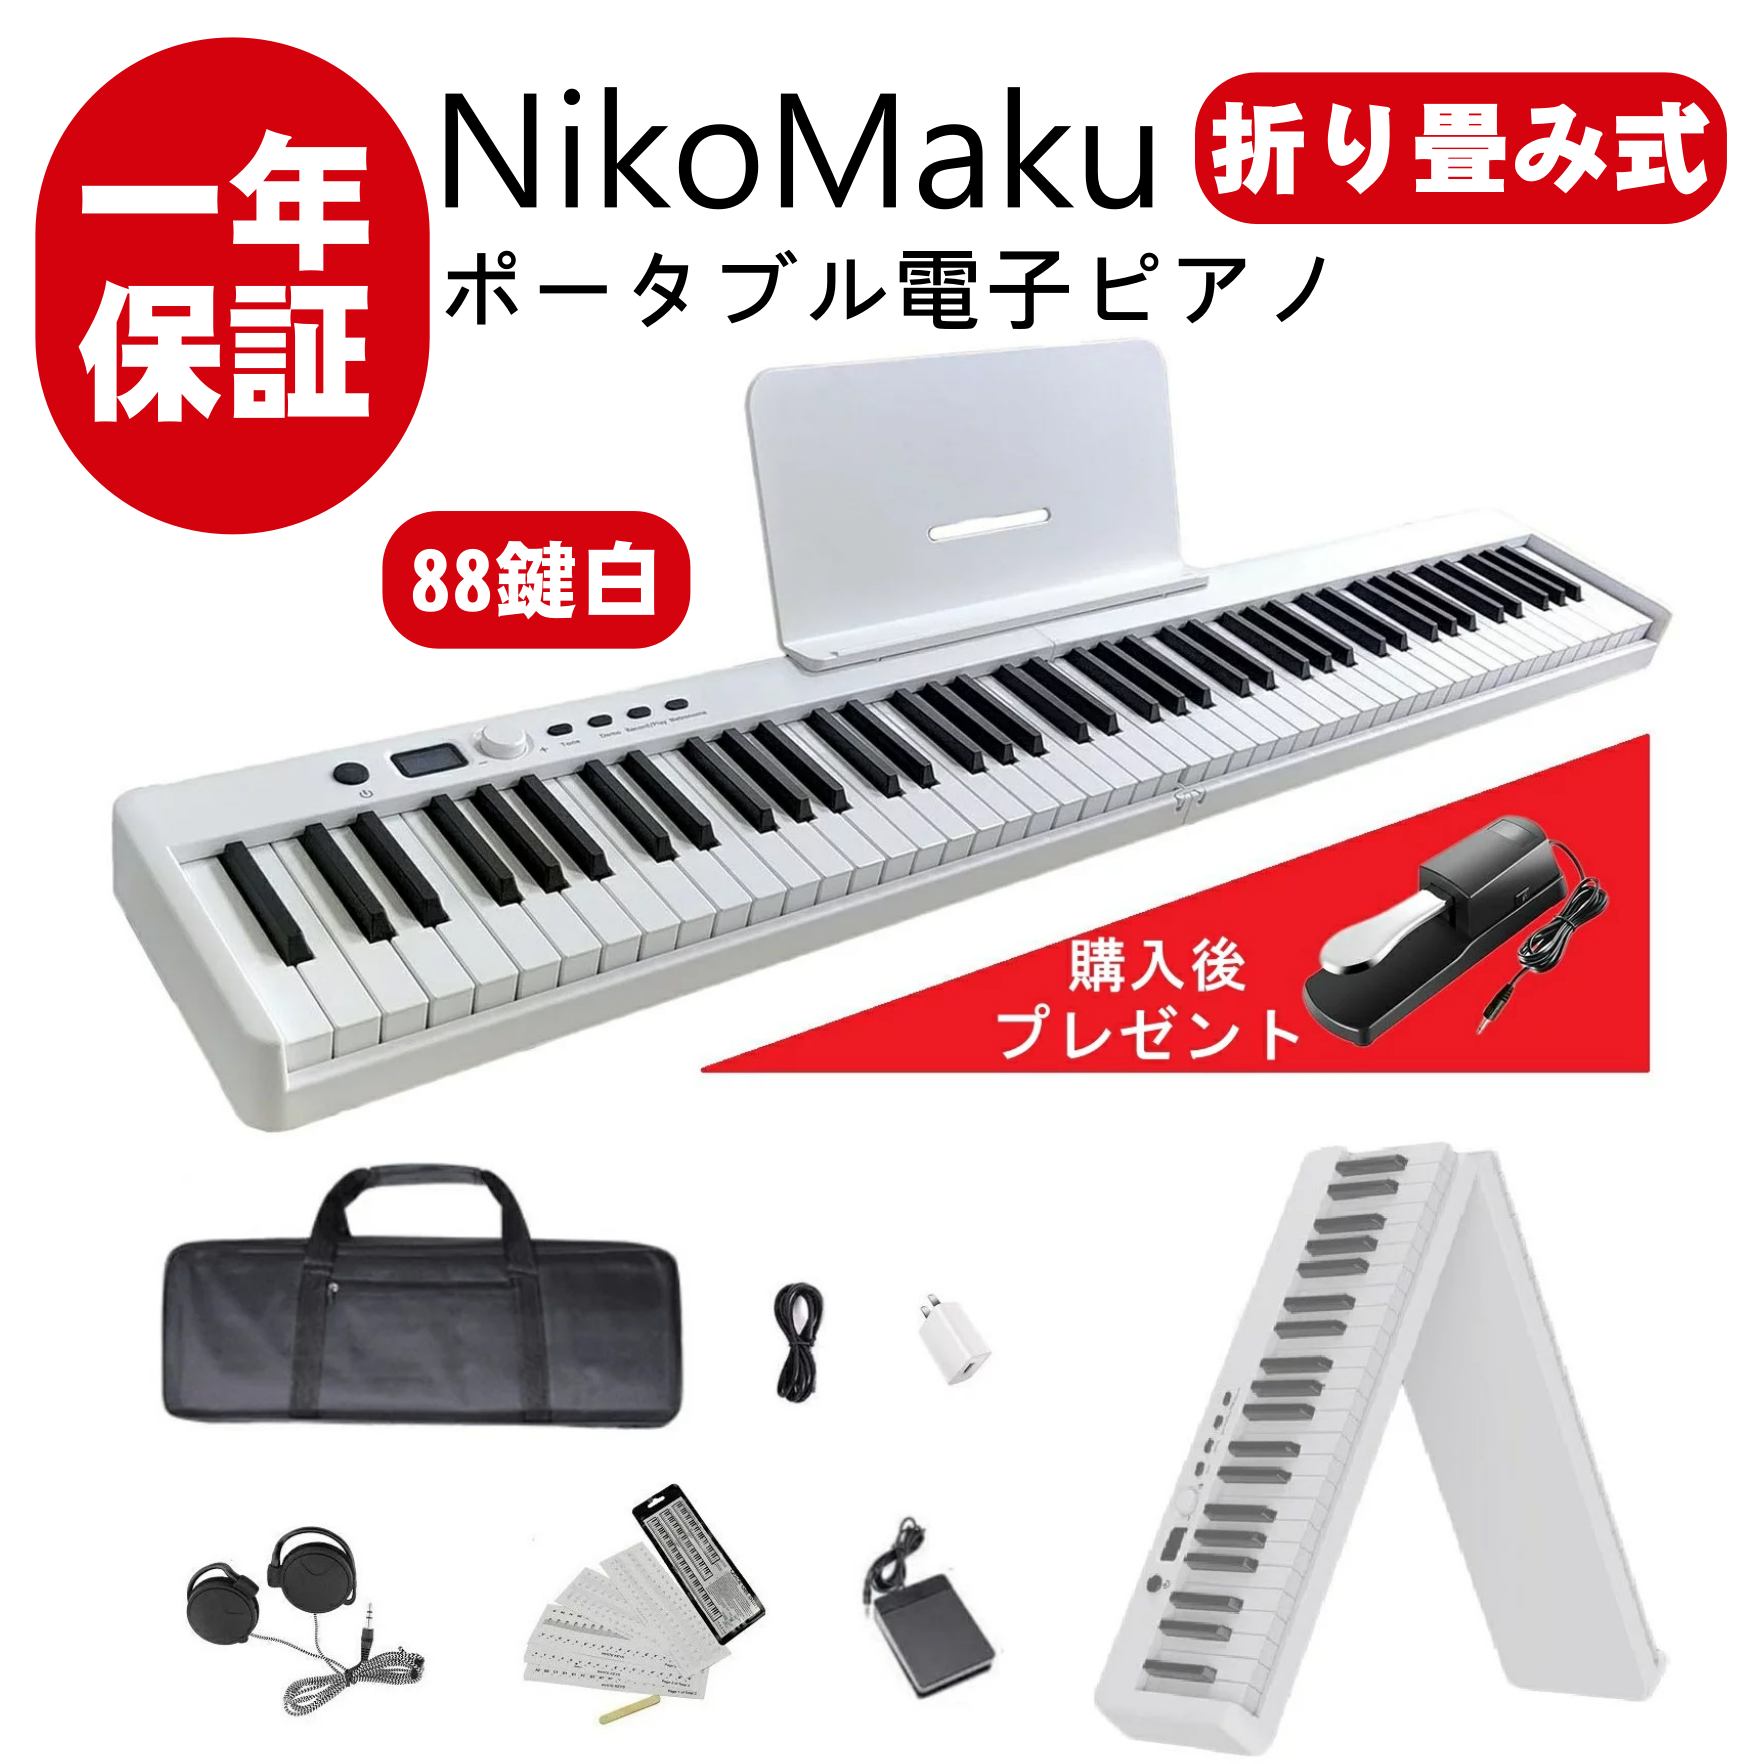 電子ピアノ 88鍵盤 NikoMaku 折り畳み式電子ピアノ SWAN-X 4キロ コンパクト 軽量 小型 MIDI対応 ソフトケース付き ペダル付き 10ｍｍストローク バッテリ内蔵 長時間利用可能 スリムボディ 練習にピッタリ 譜面台 鍵盤シール 練習用イヤホン 白